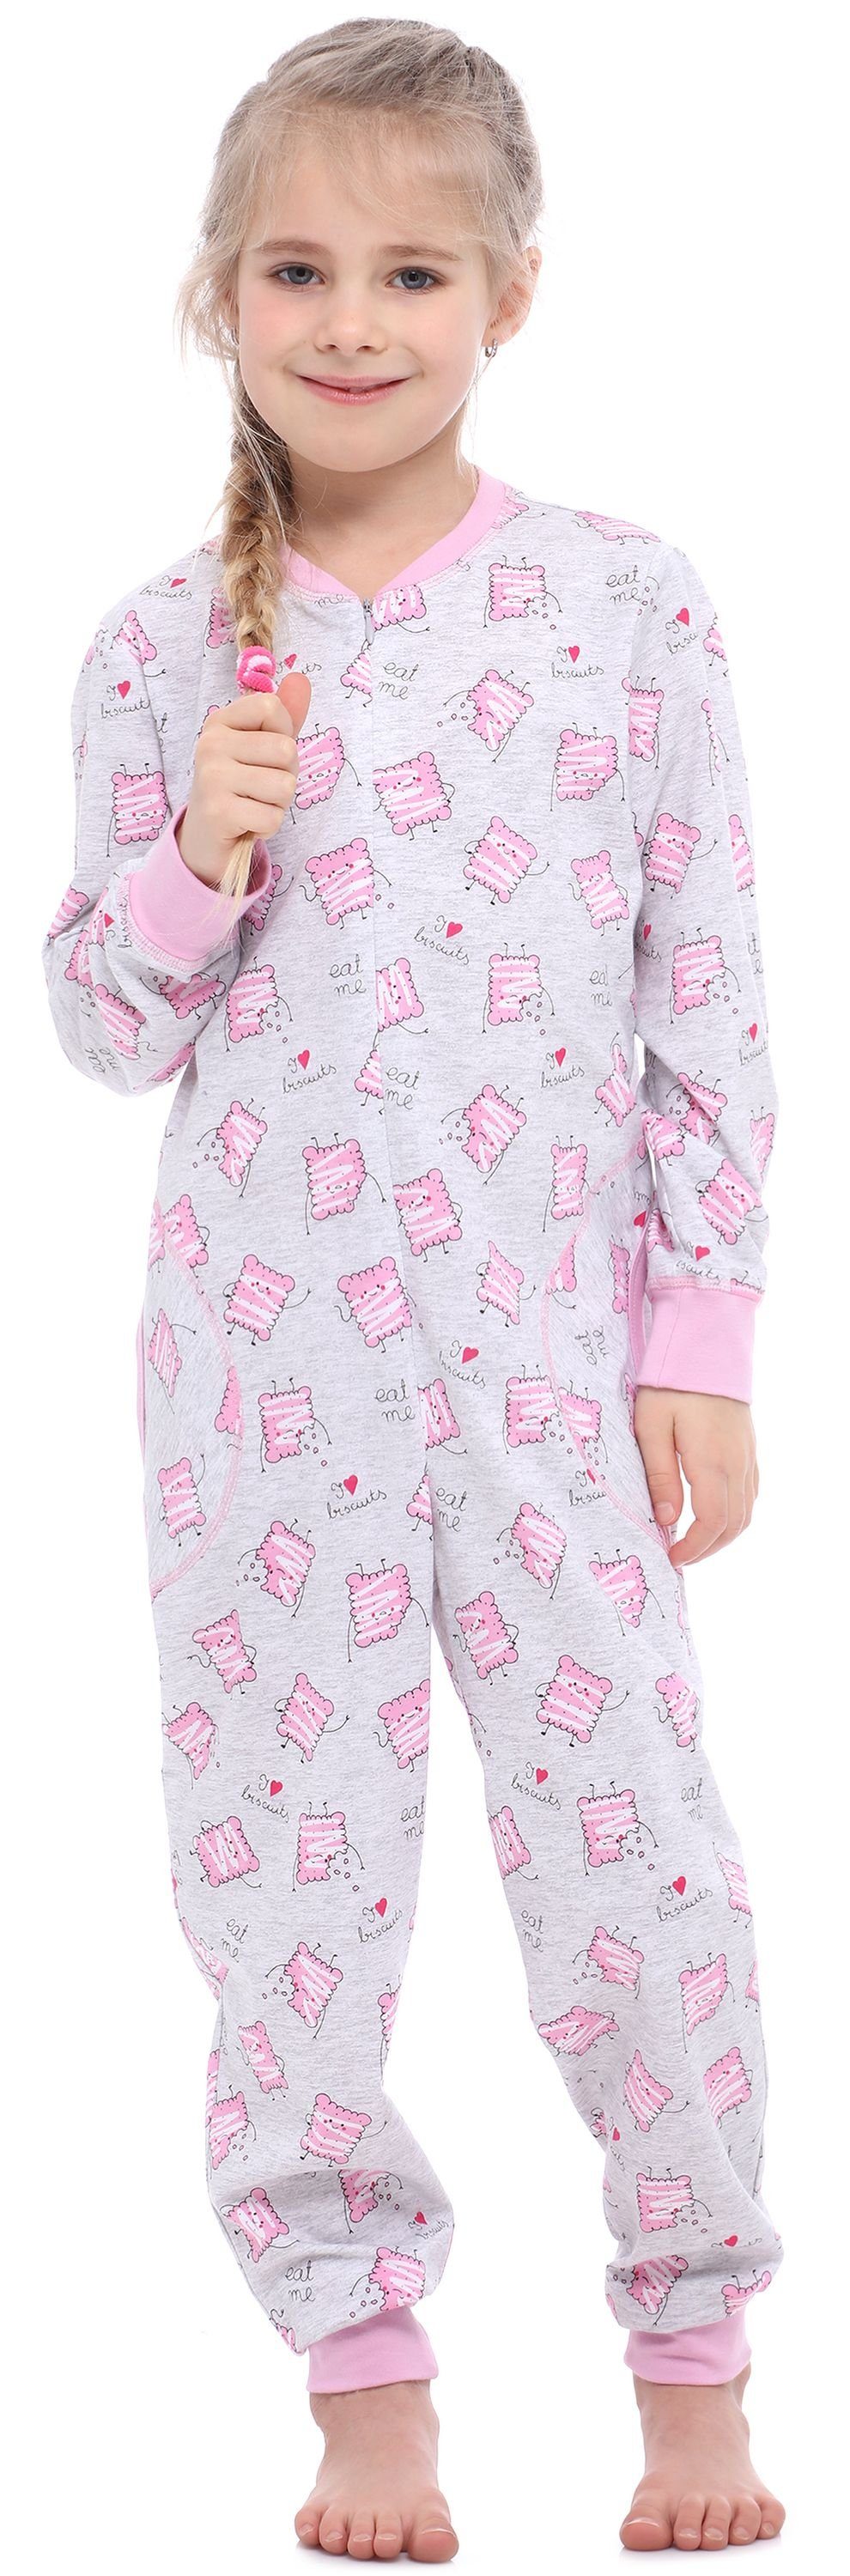 Kekse Merry Jumpsuit Style Melange Mädchen Schlafanzug MS10-186 Schlafanzug